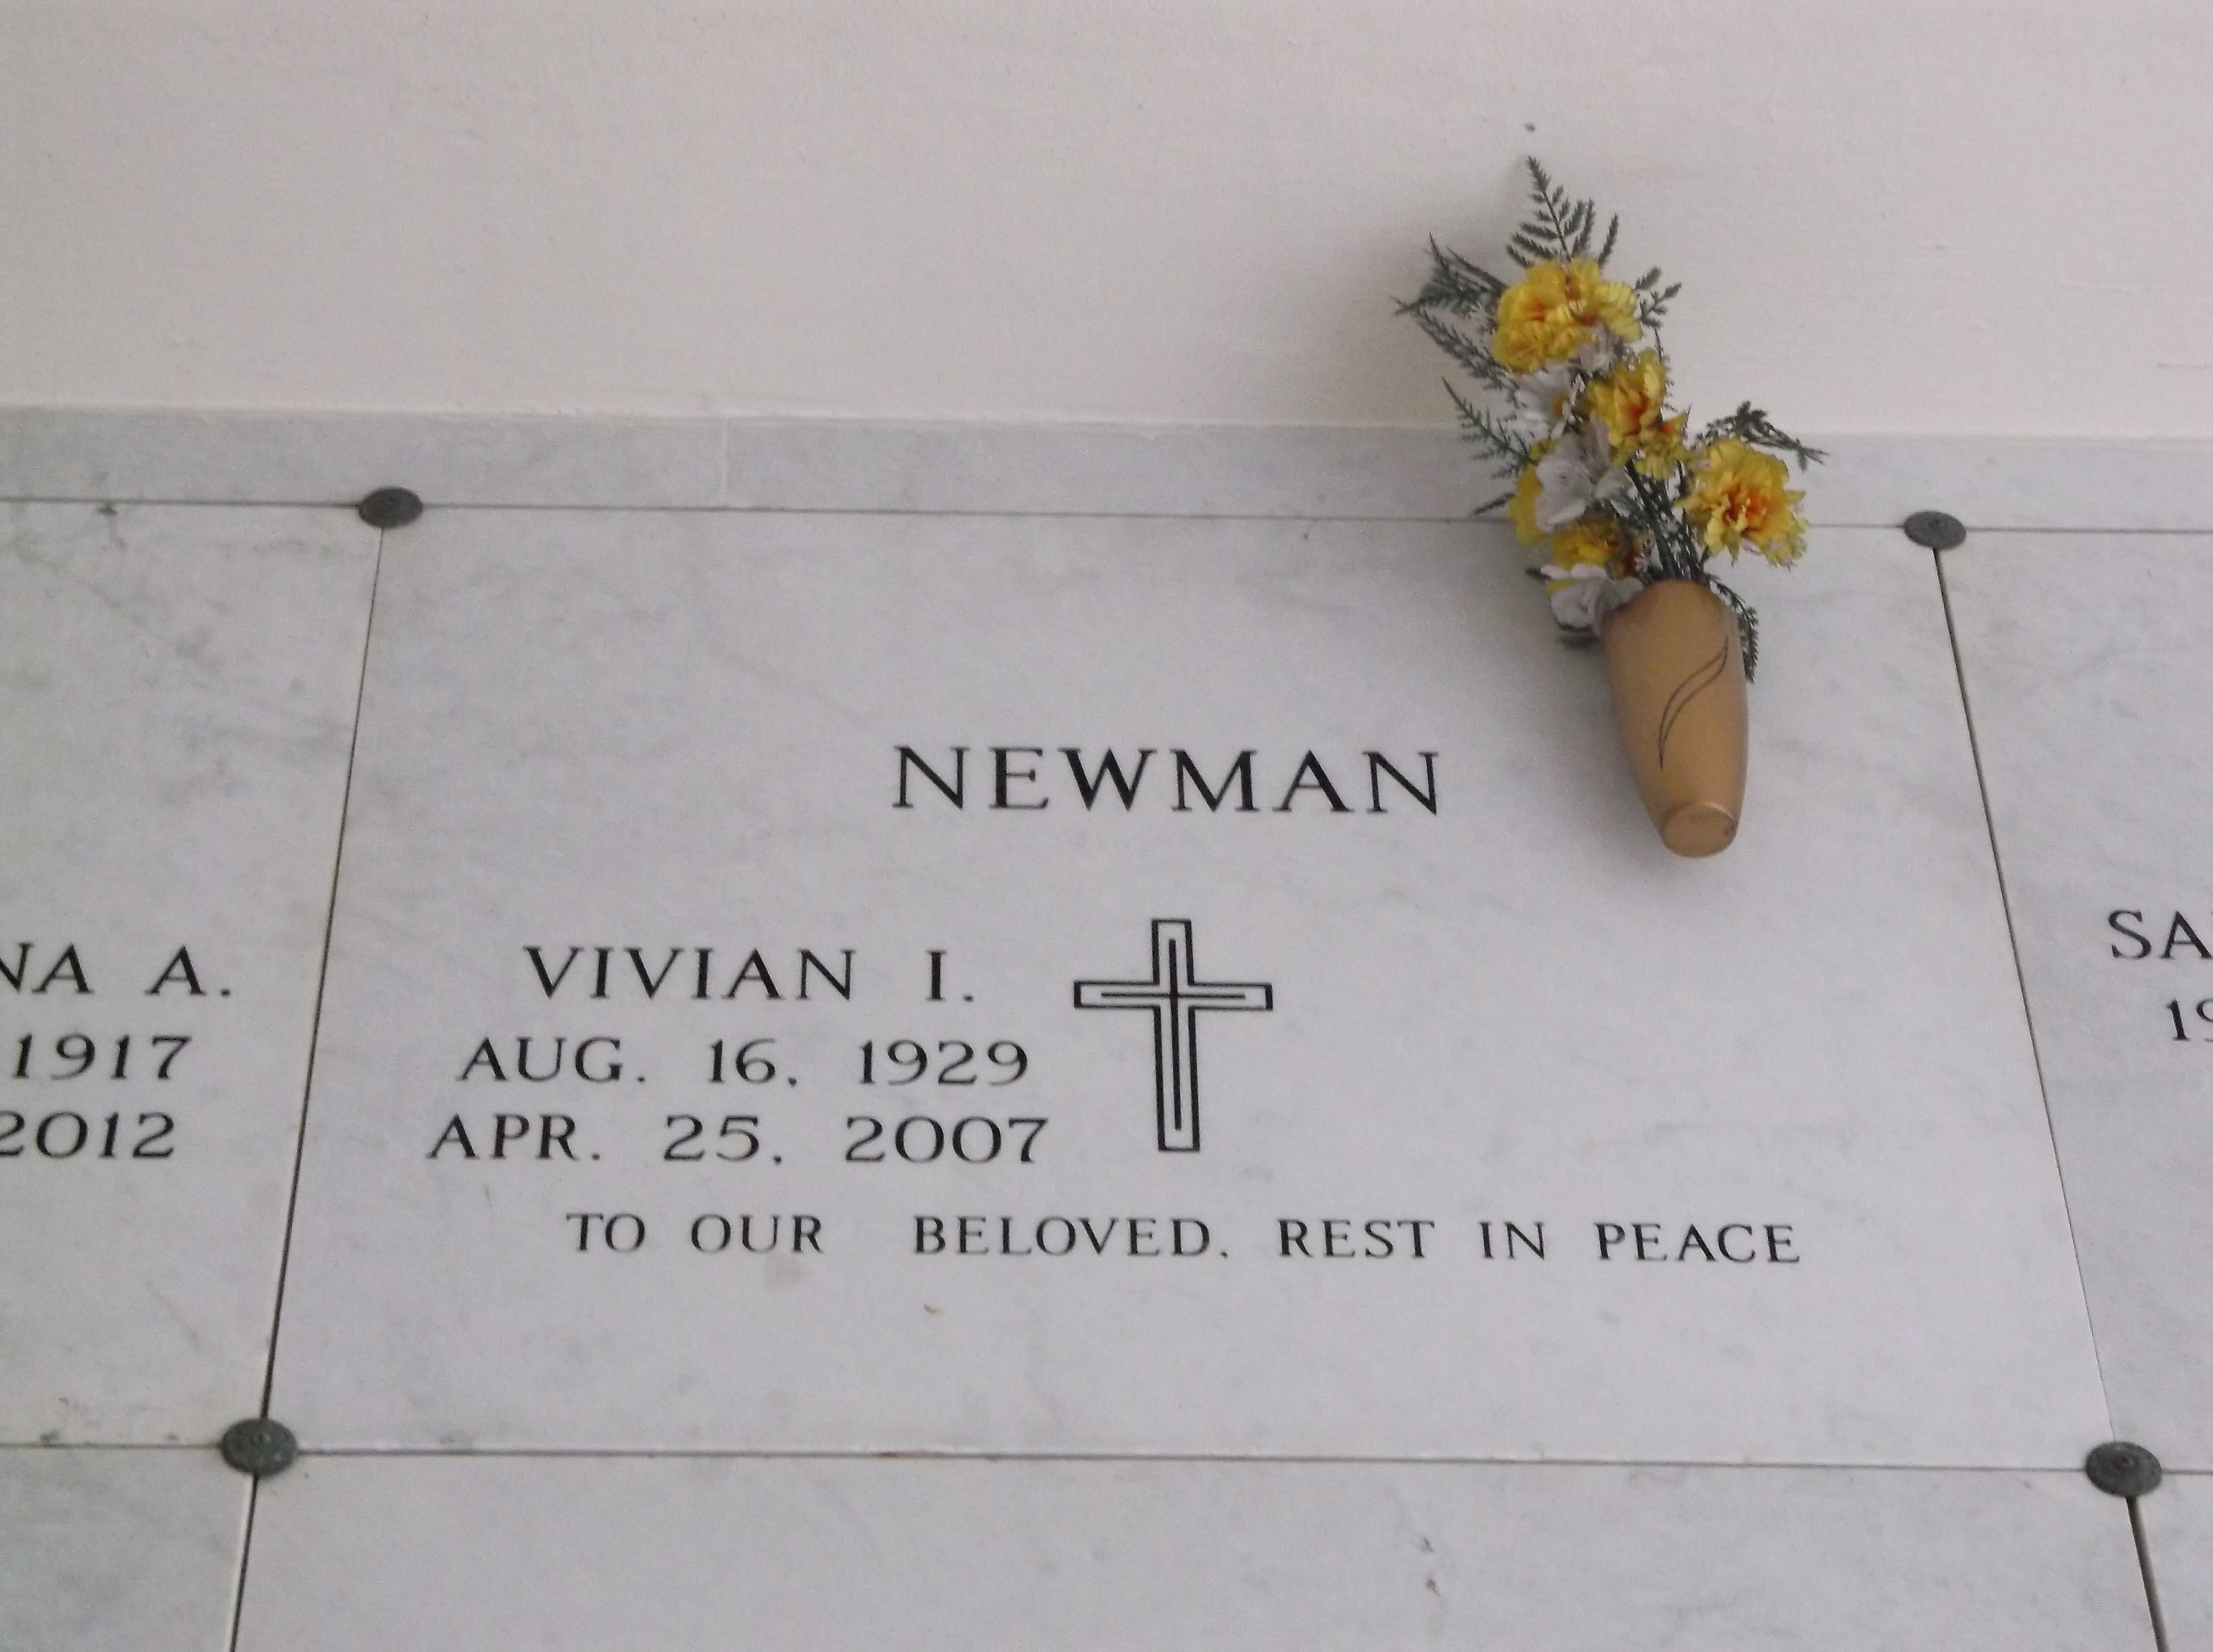 Vivian I Newman